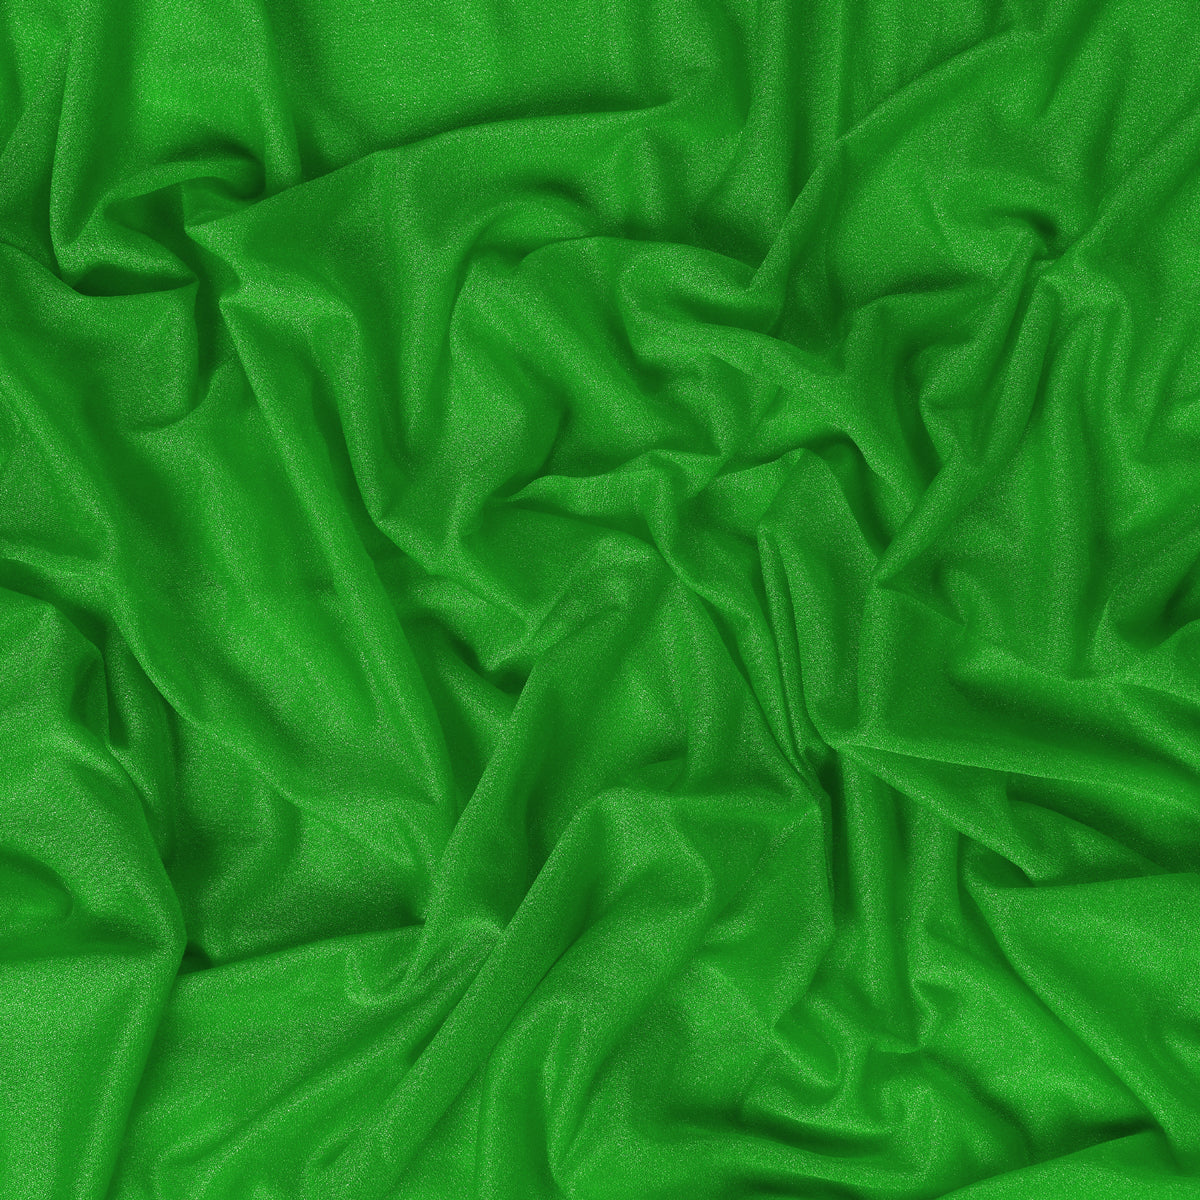 Green,d1e4709d-afc2-49d8-9a54-69719d1a2151